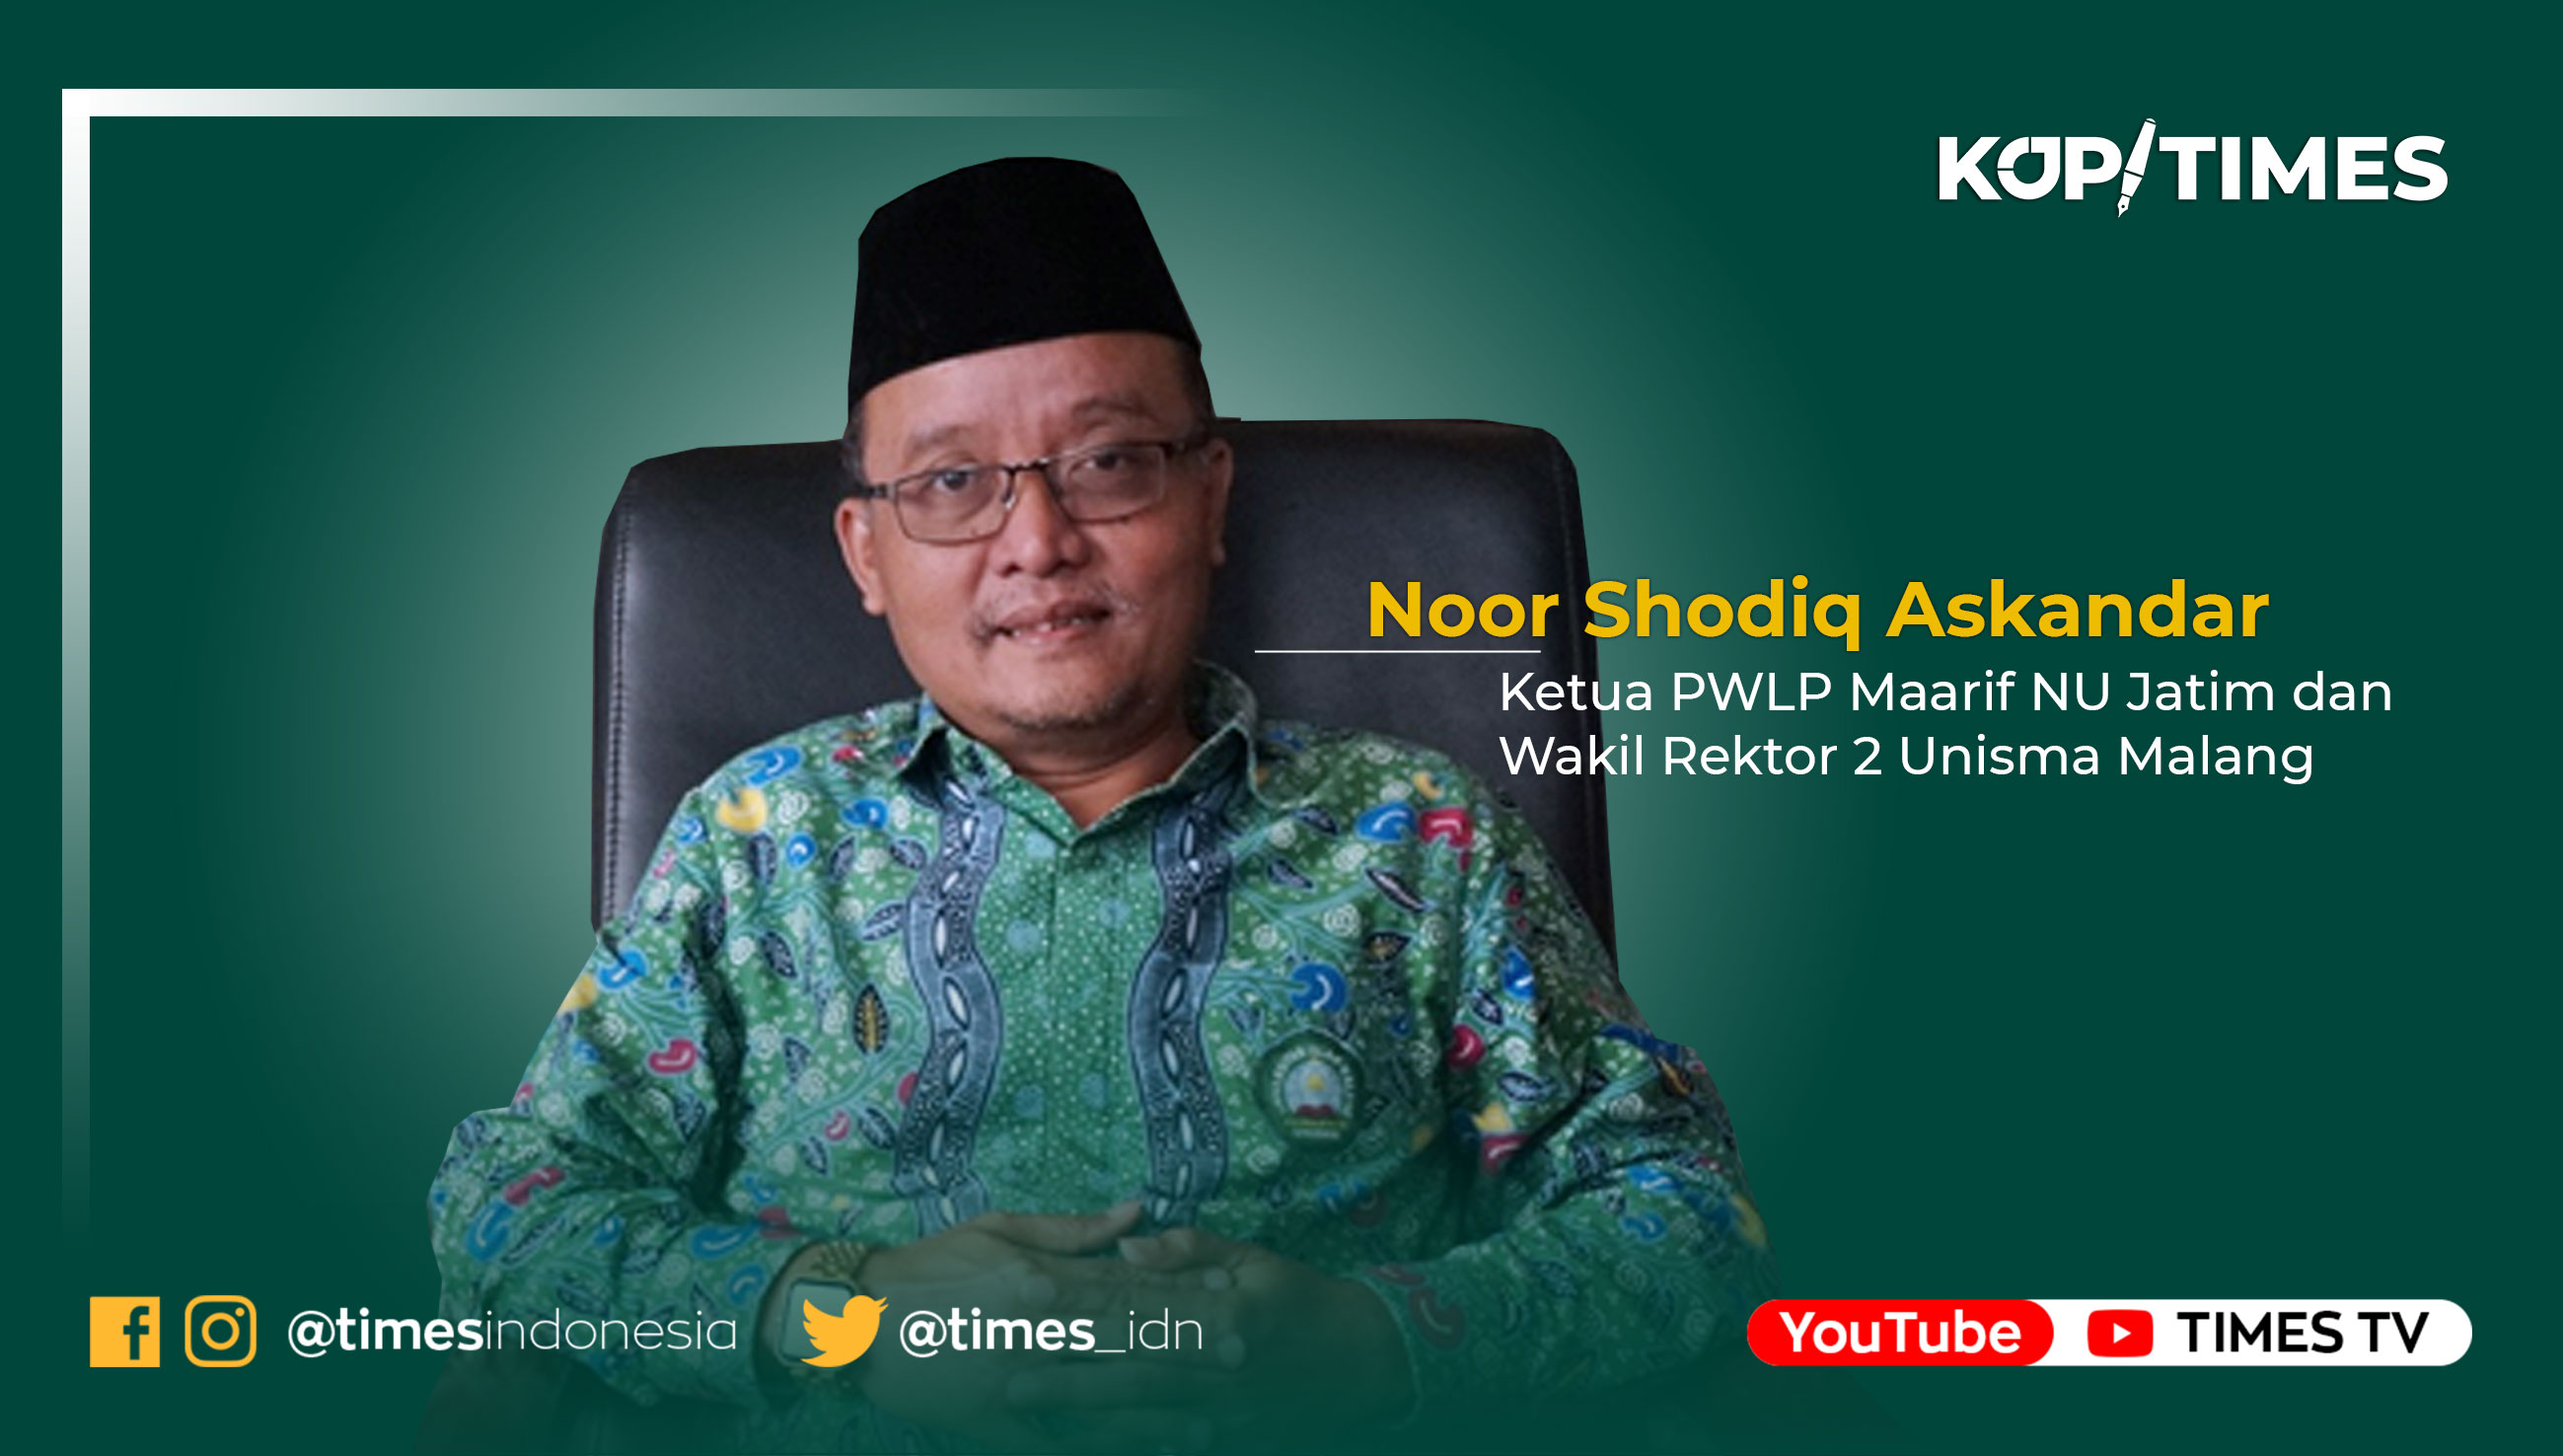 Noor Shodiq Askandar, Ketua PWLP Maarif NU Jatim dan Wakil Rektor 2 Unisma Malang